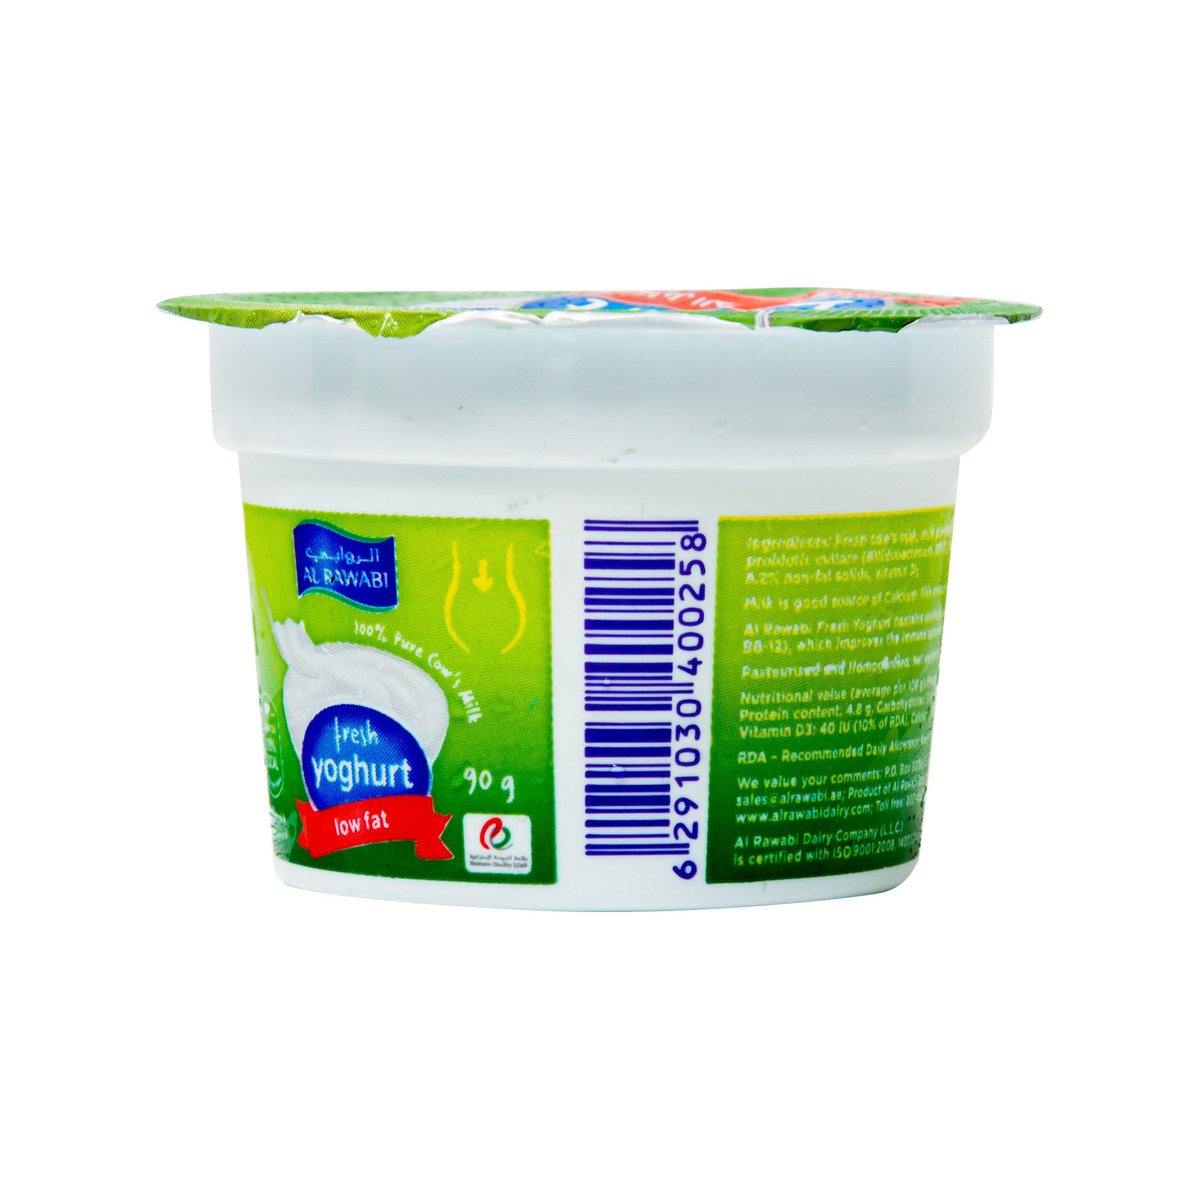 Al Rawabi Yoghurt Low Fat, 90 g